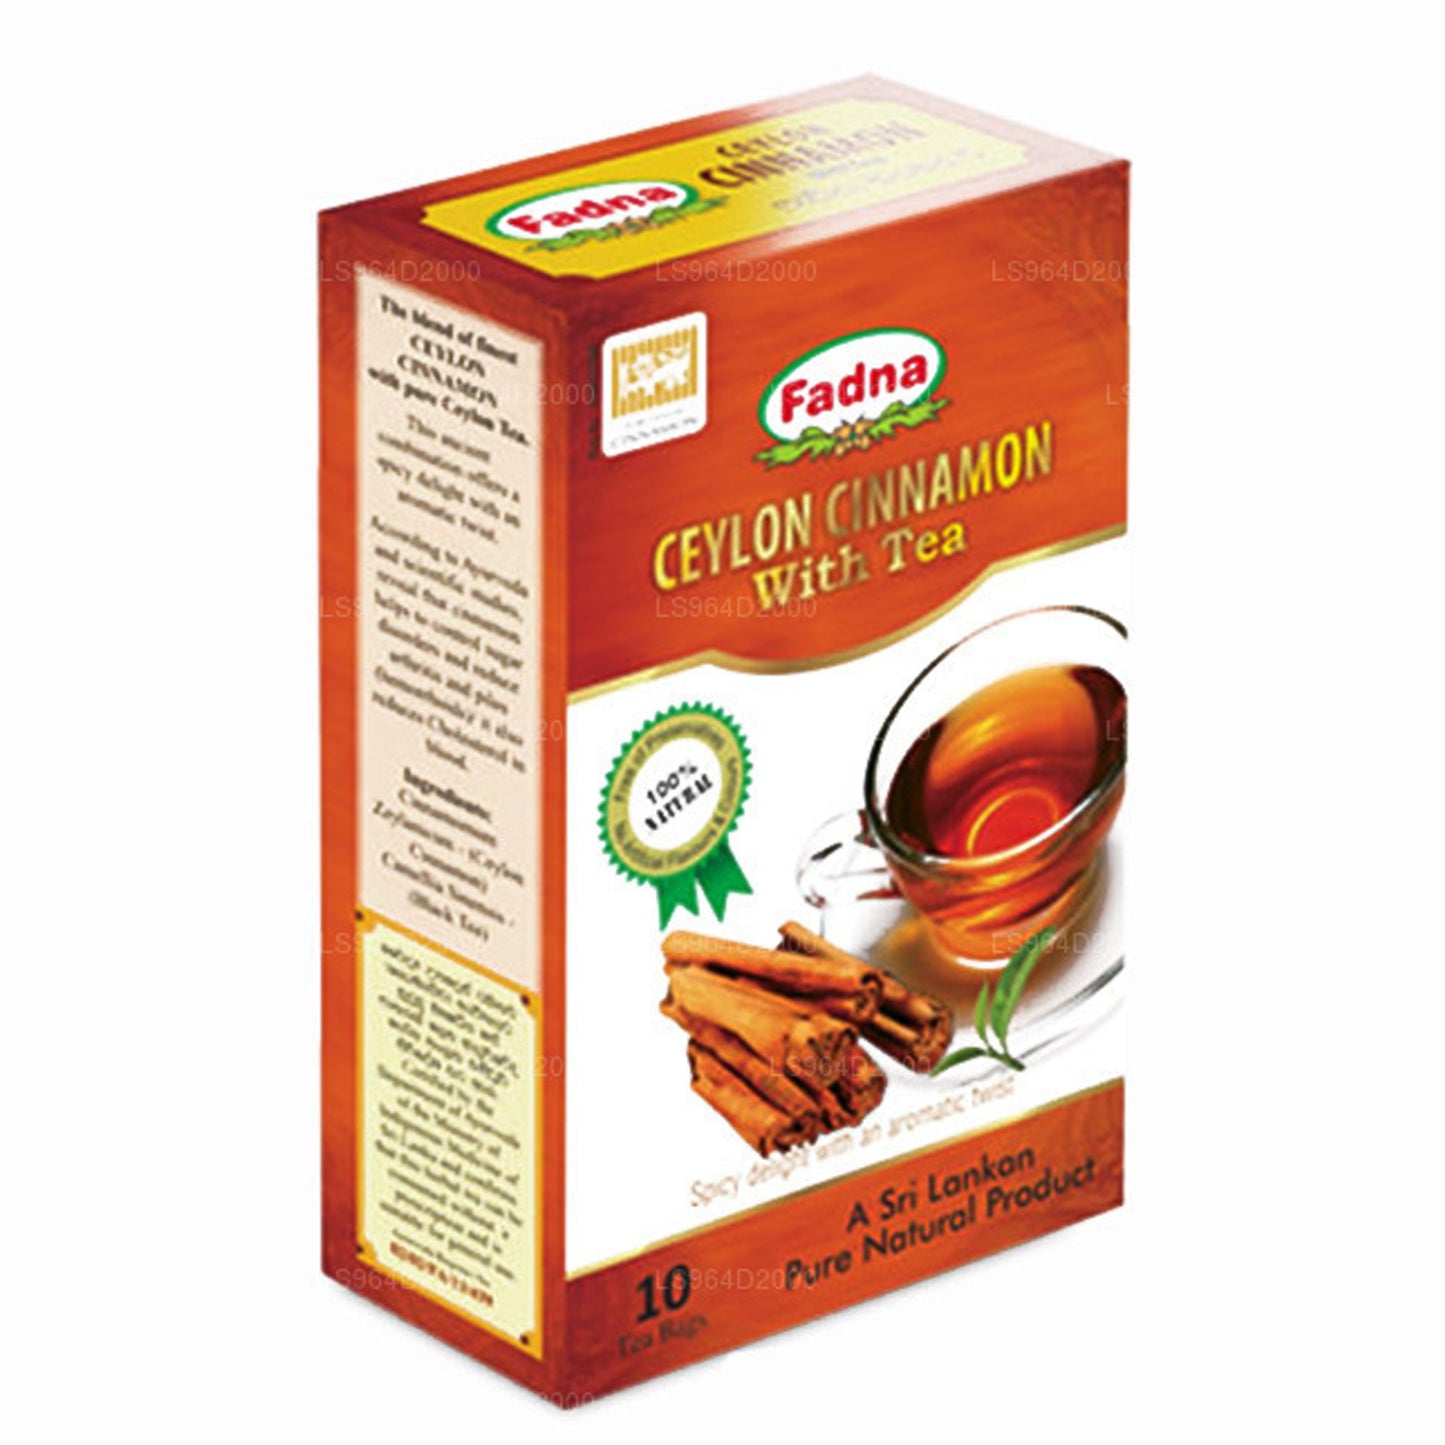 Fadna Ceylon kanel örtte (20g) 10 tepåsar